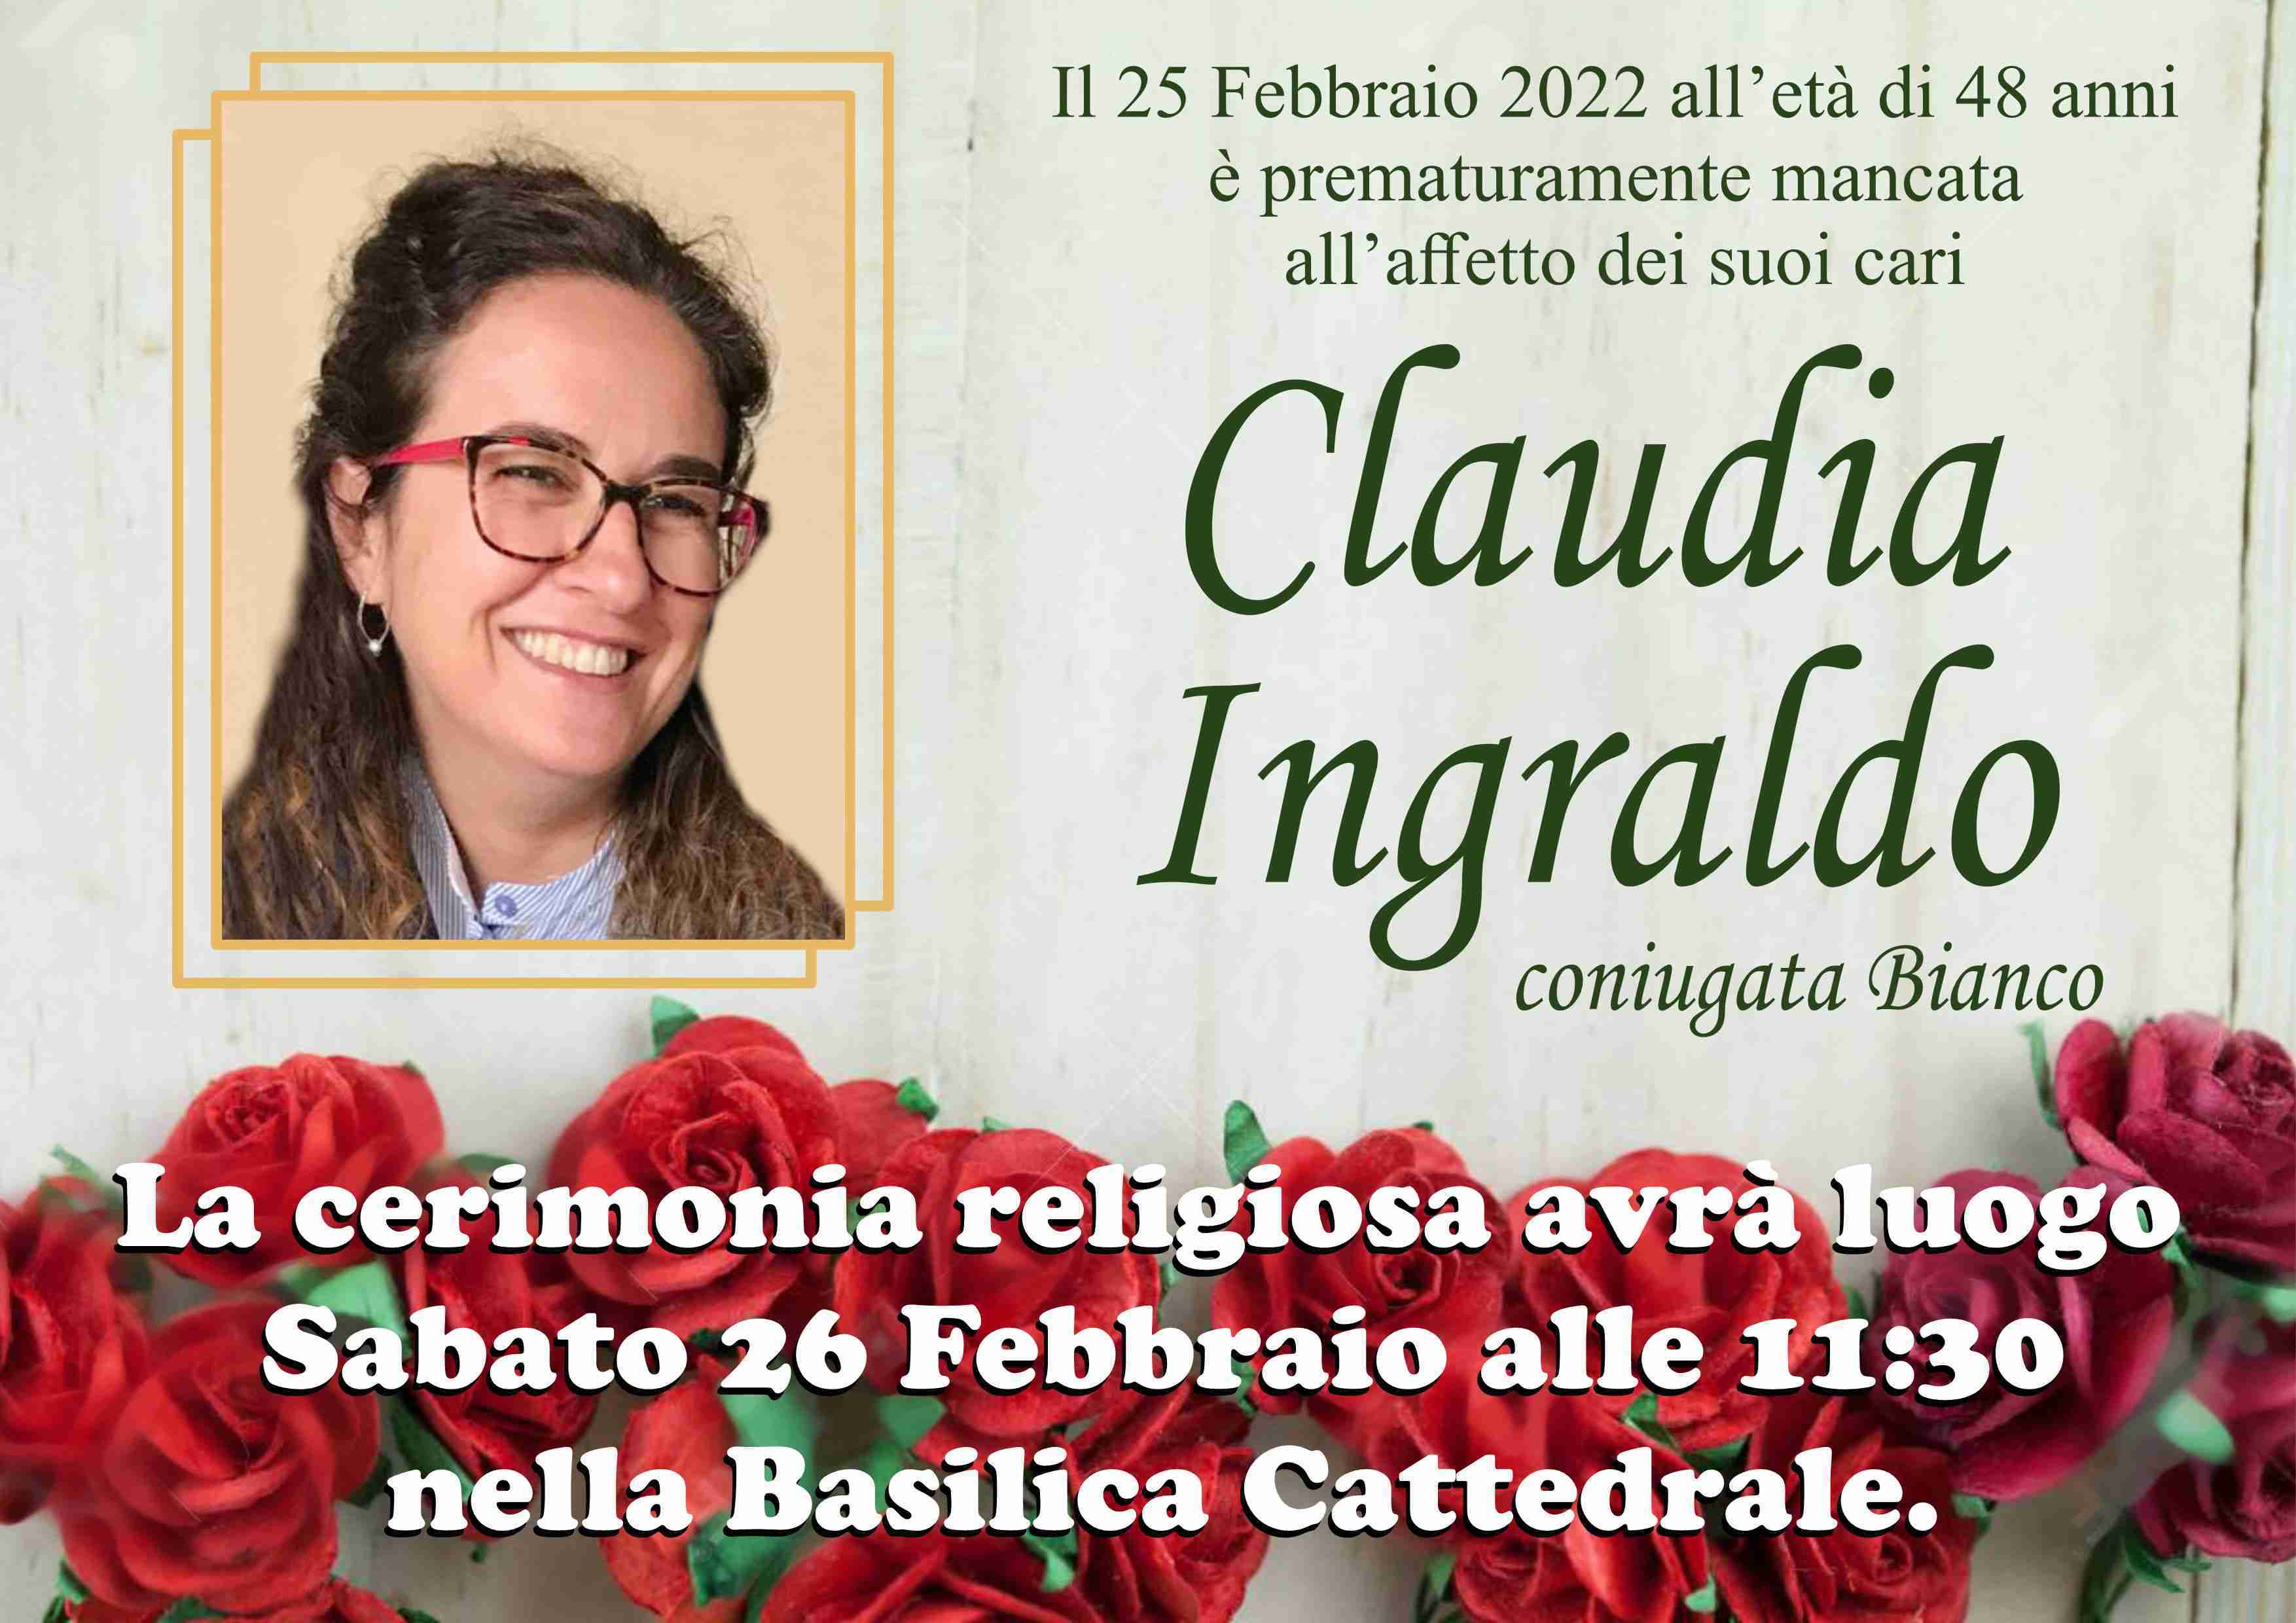 Claudia Ingraldo